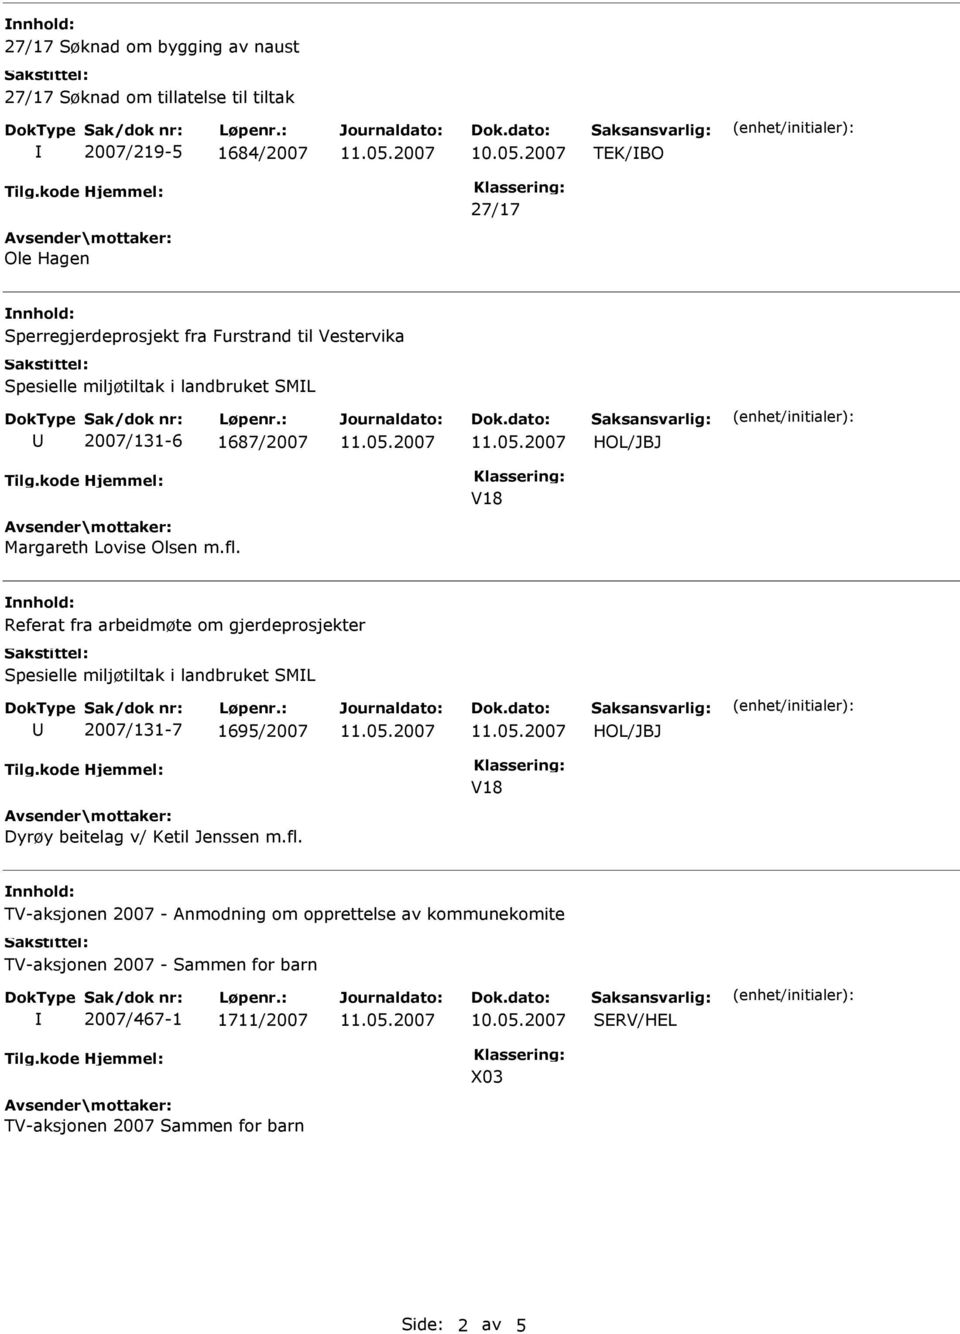 Referat fra arbeidmøte om gjerdeprosjekter Spesielle miljøtiltak i landbruket SML 2007/131-7 1695/2007 Dyrøy beitelag v/ Ketil Jenssen m.fl.